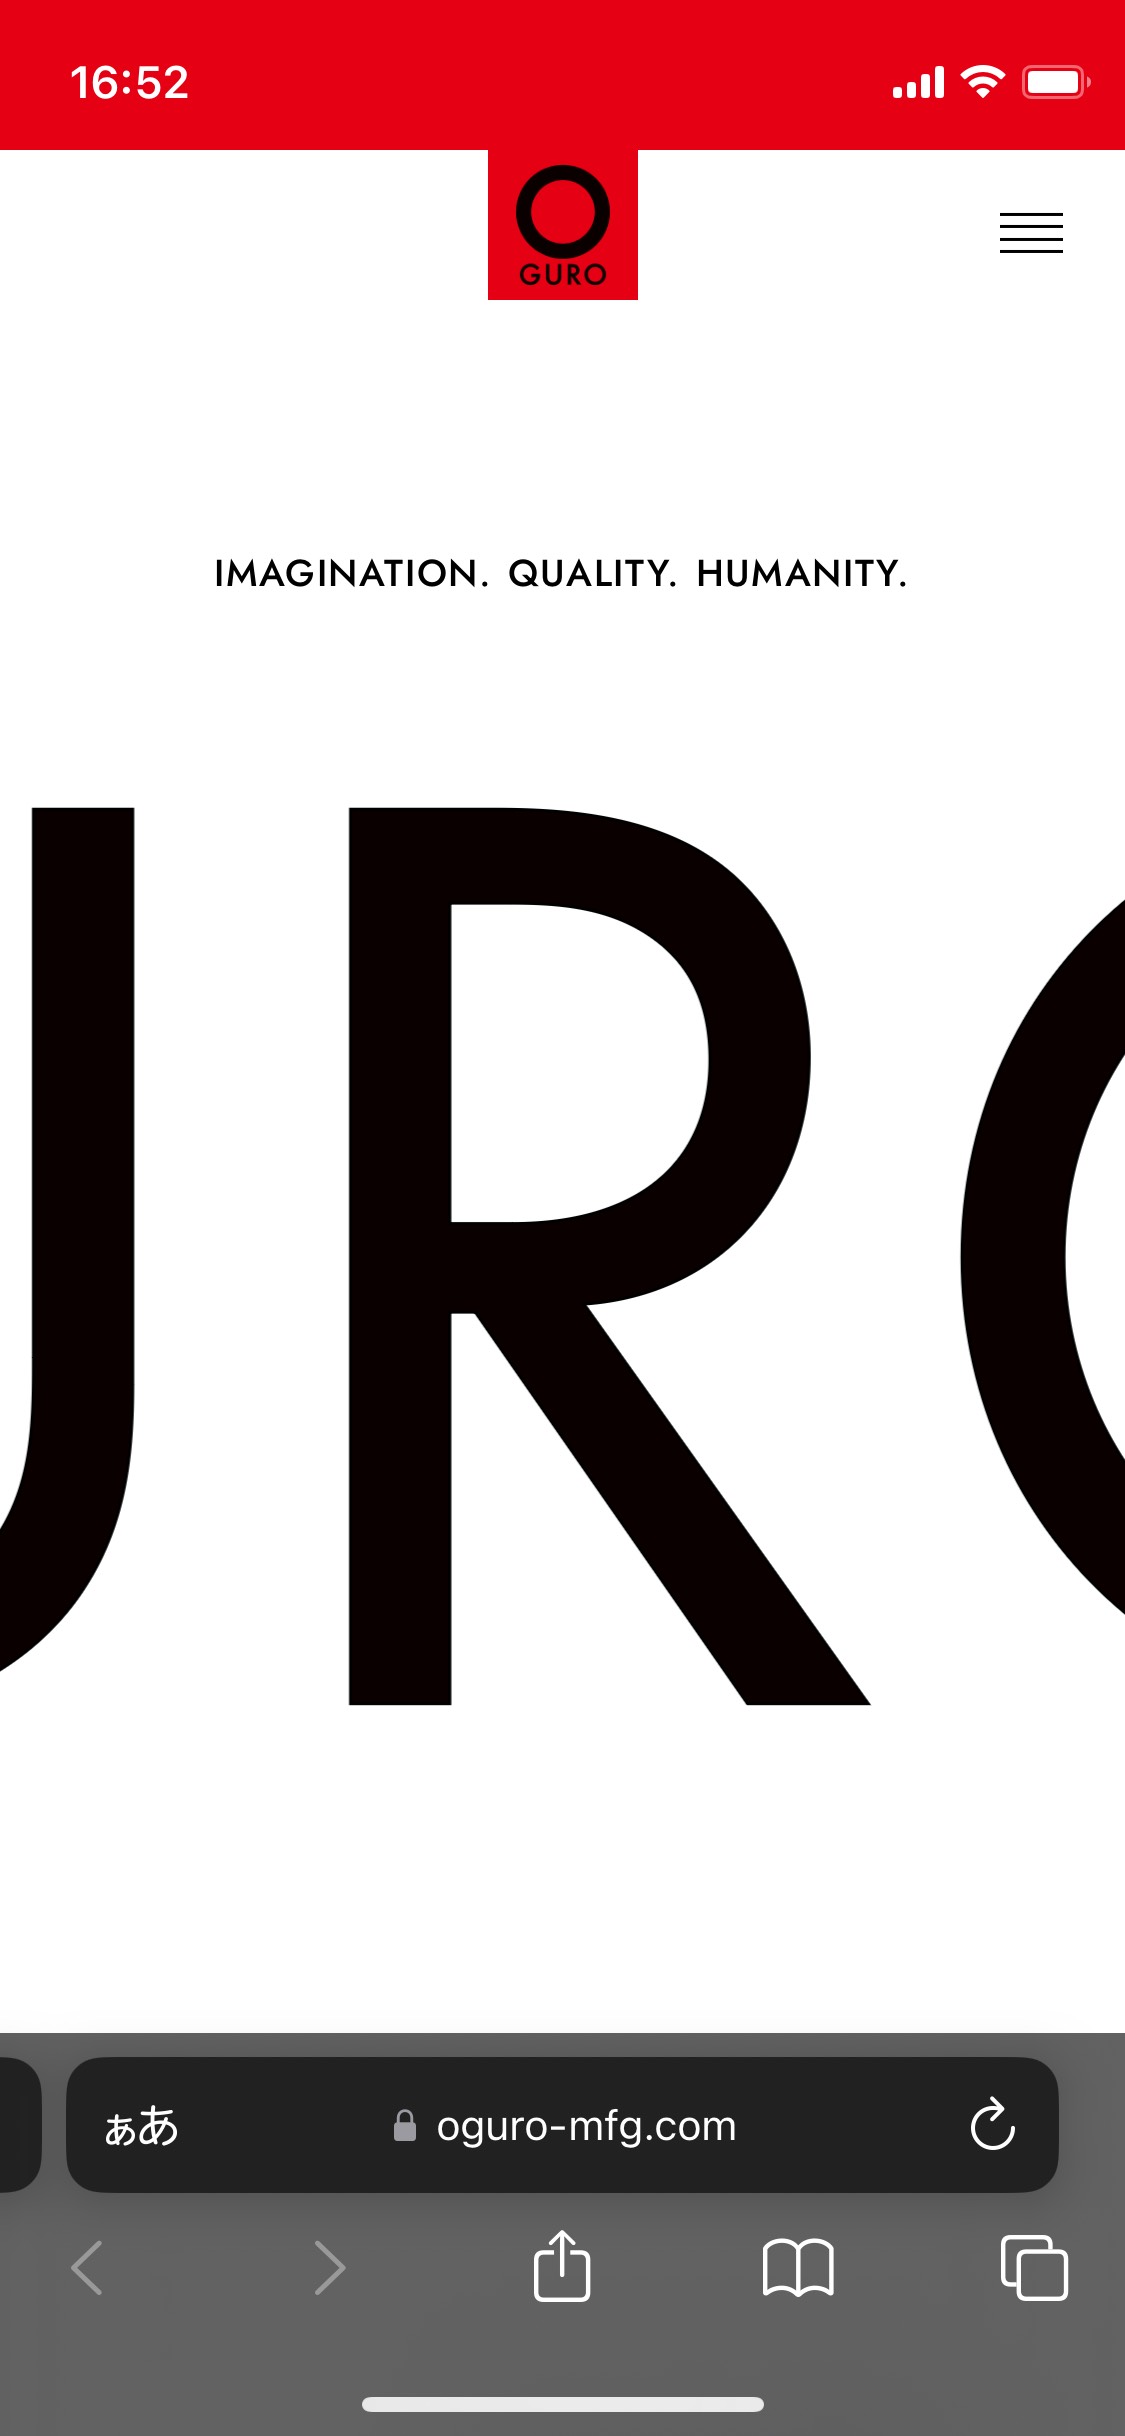 OGURO Inc.